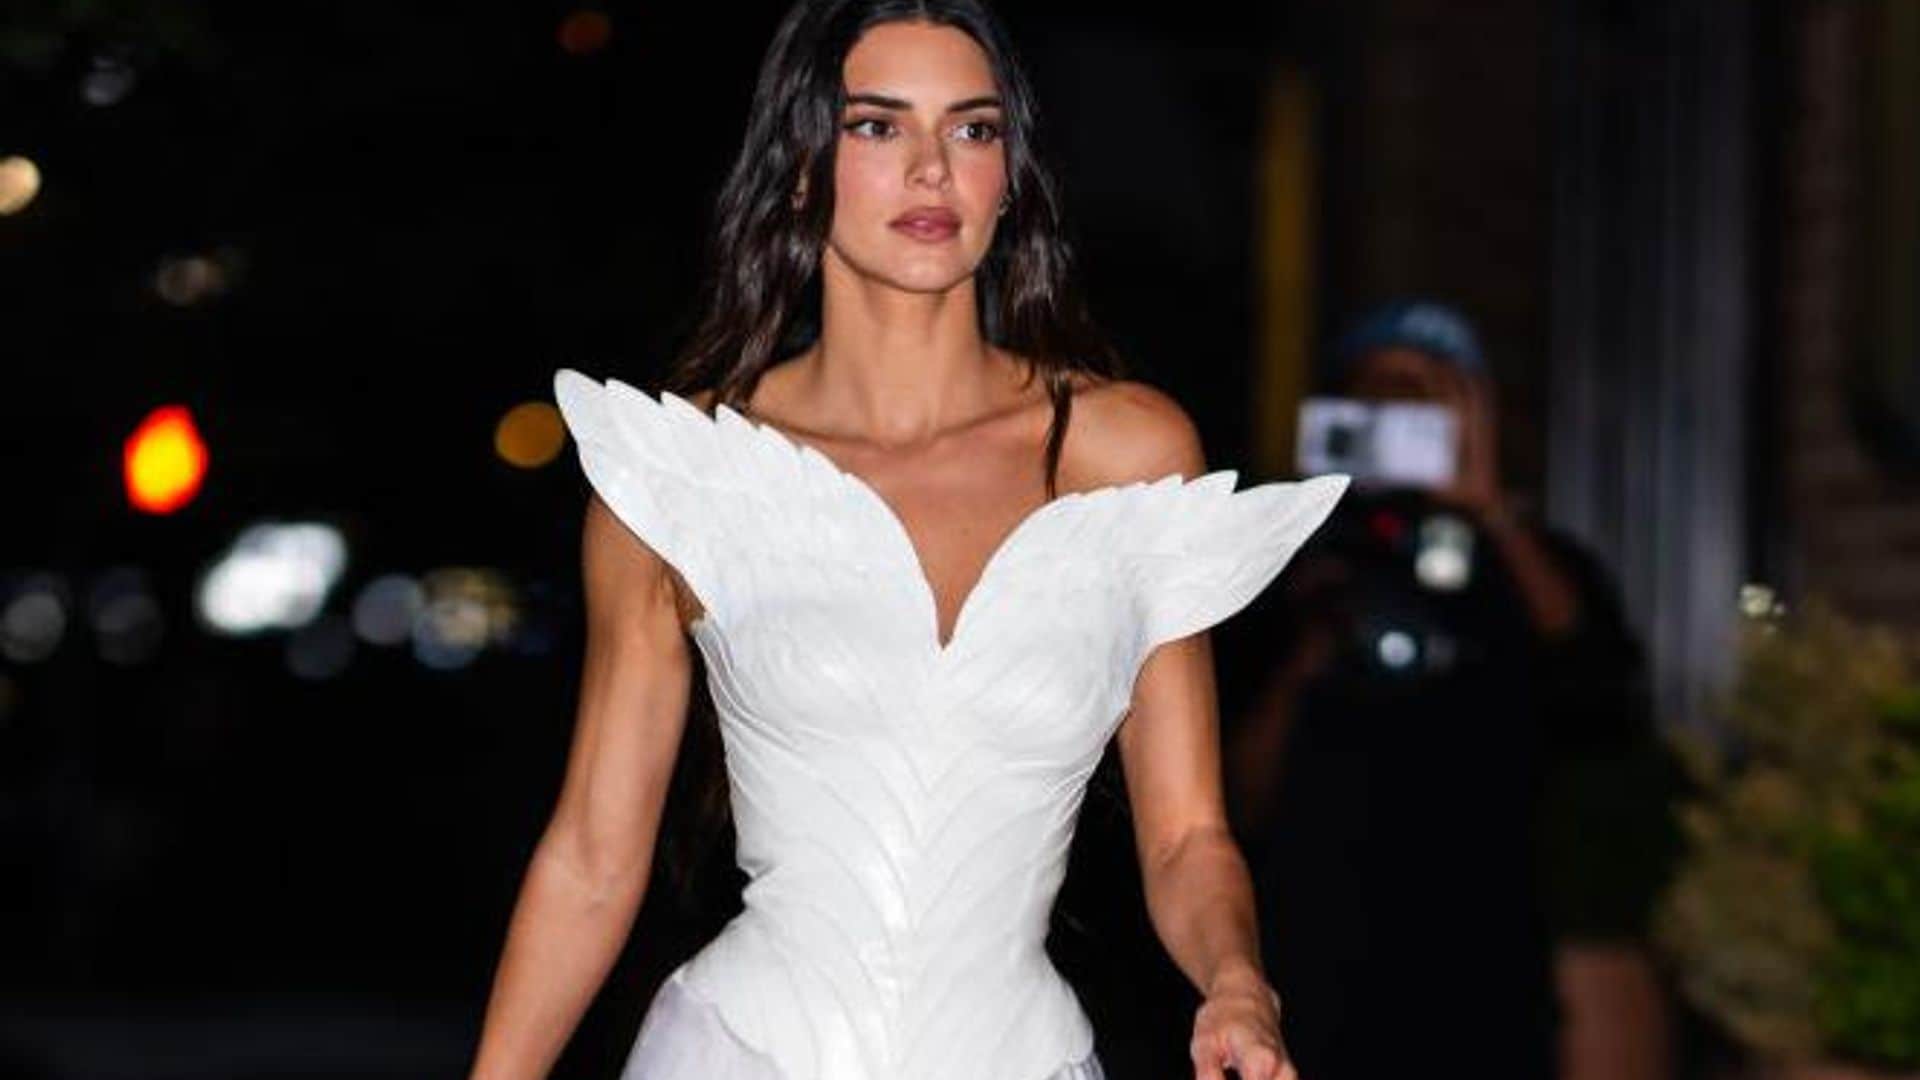 El segundo ‘look’ de Kendall Jenner para la fiesta posterior a la MET Gala es otra pieza de archivo